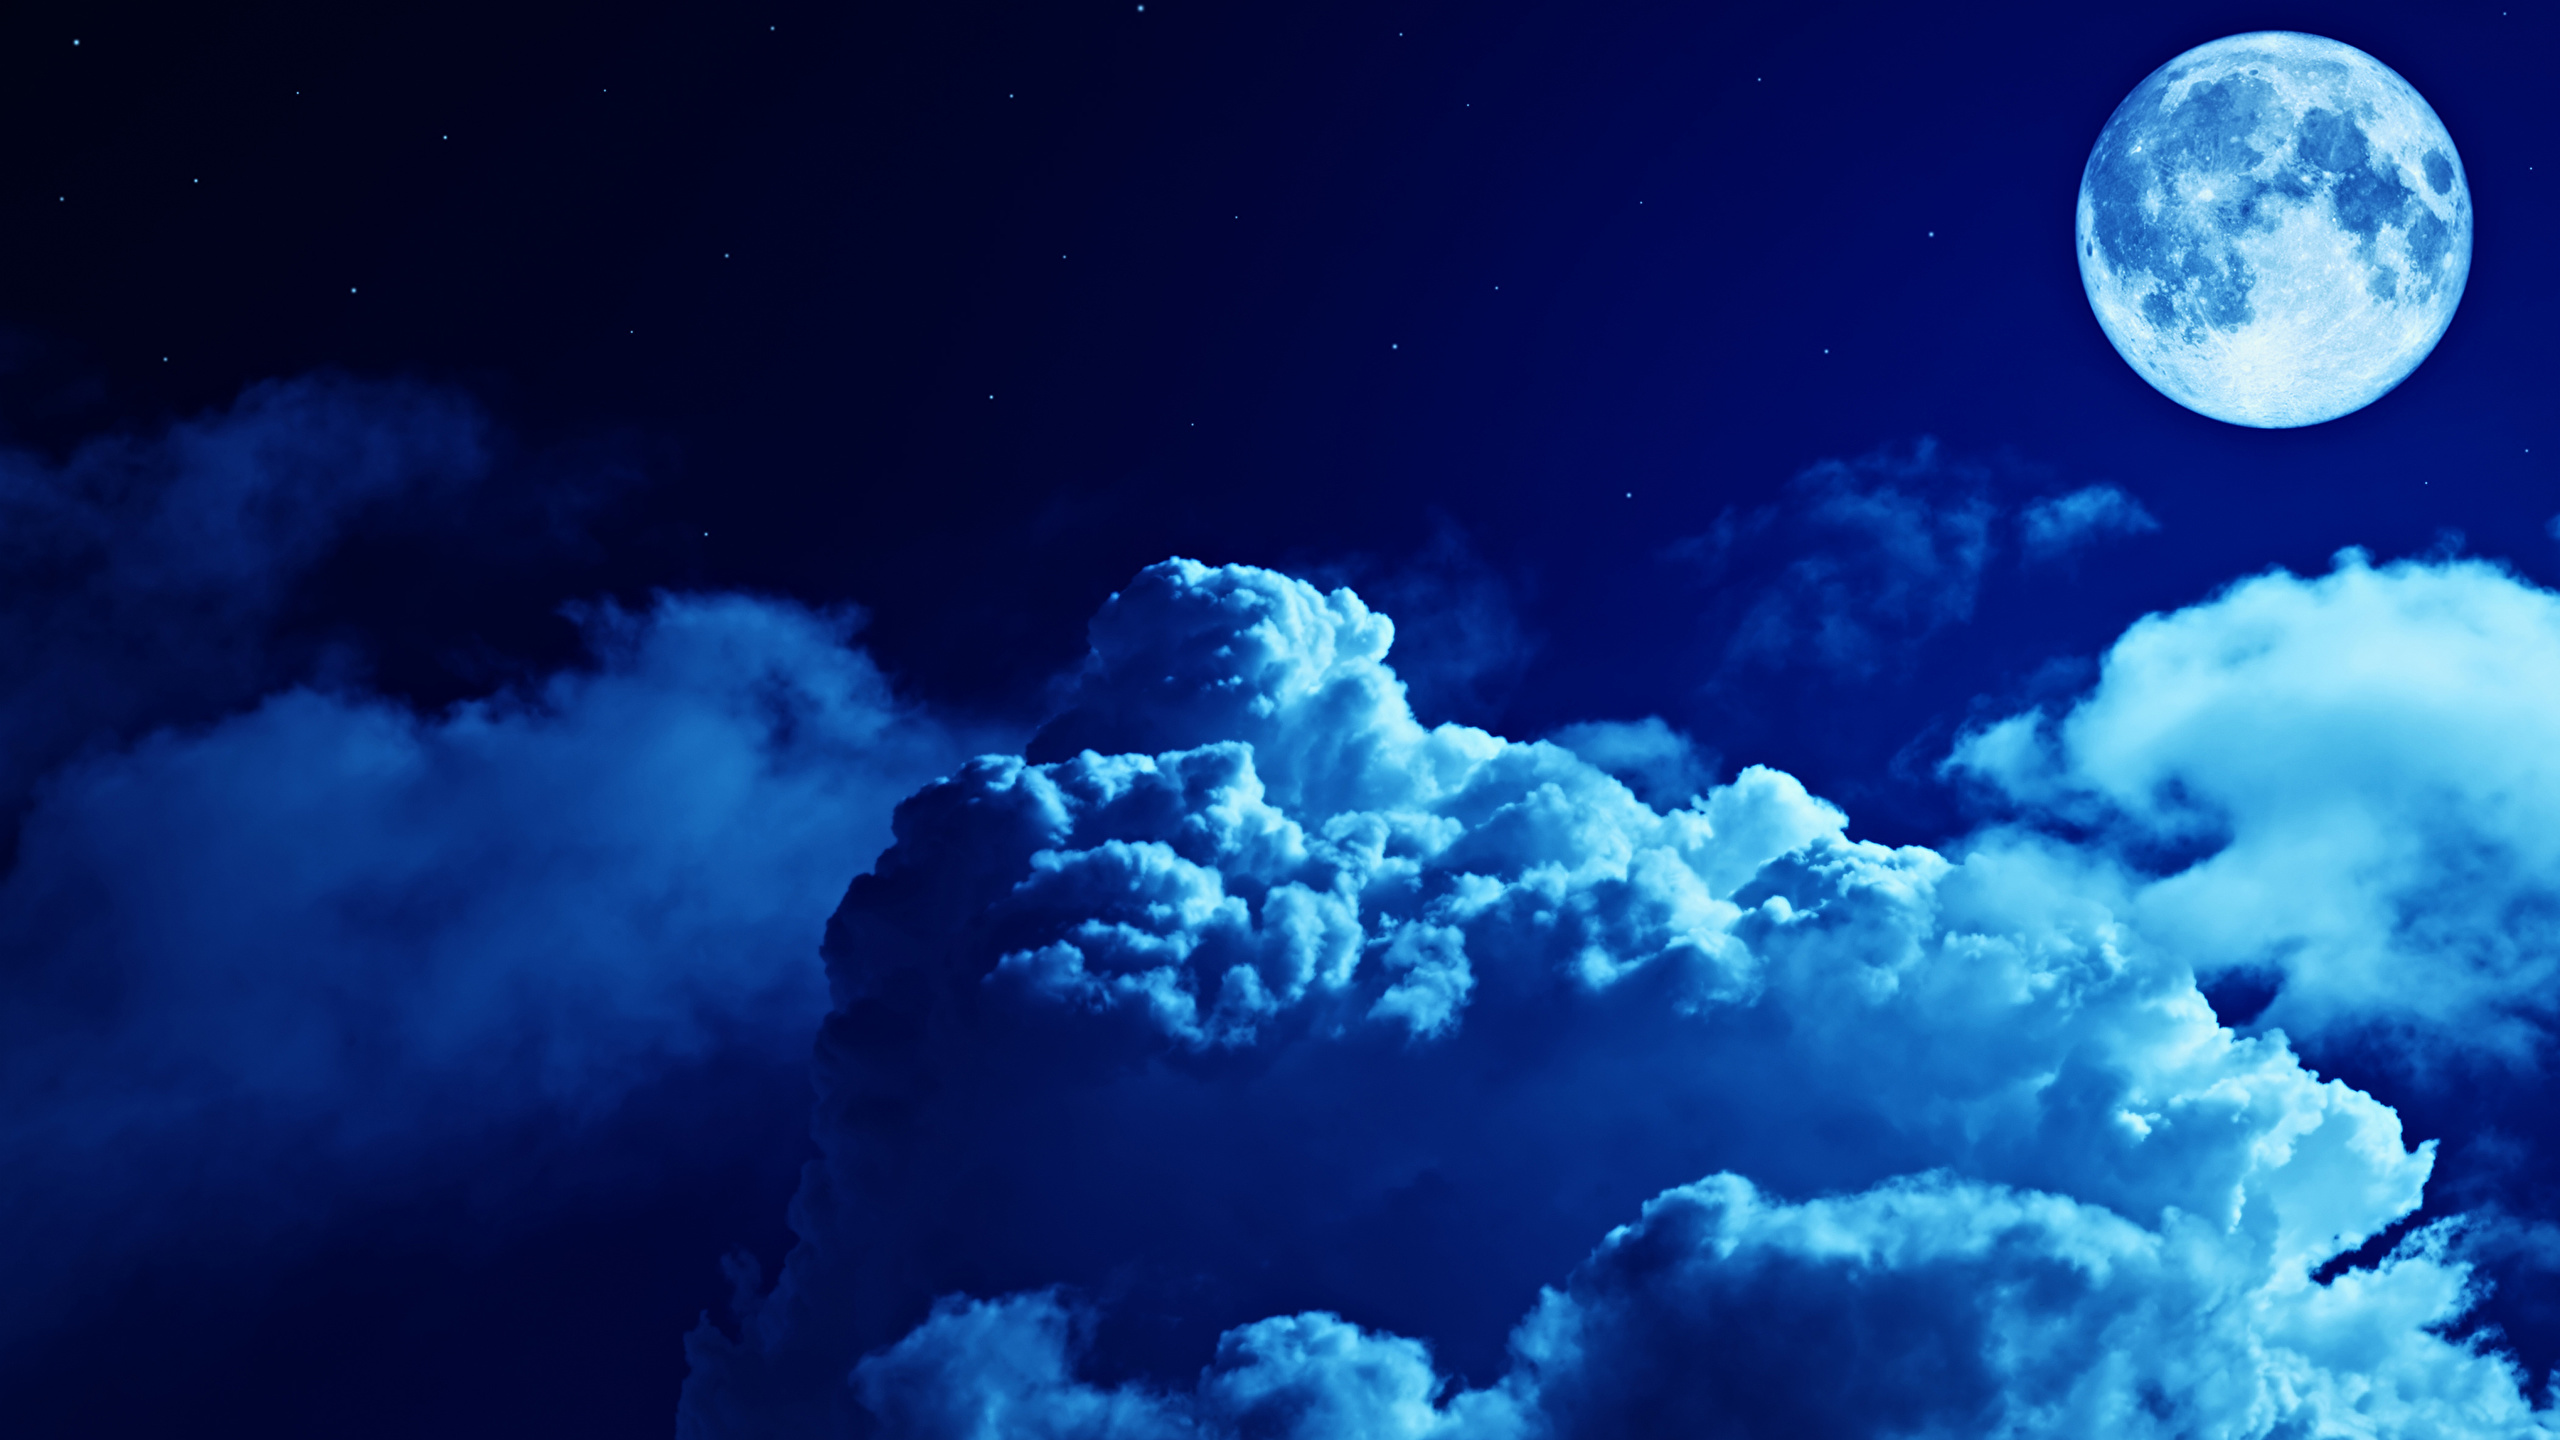 壁紙 2560x1440 空 夜 月 雲 自然 ダウンロード 写真